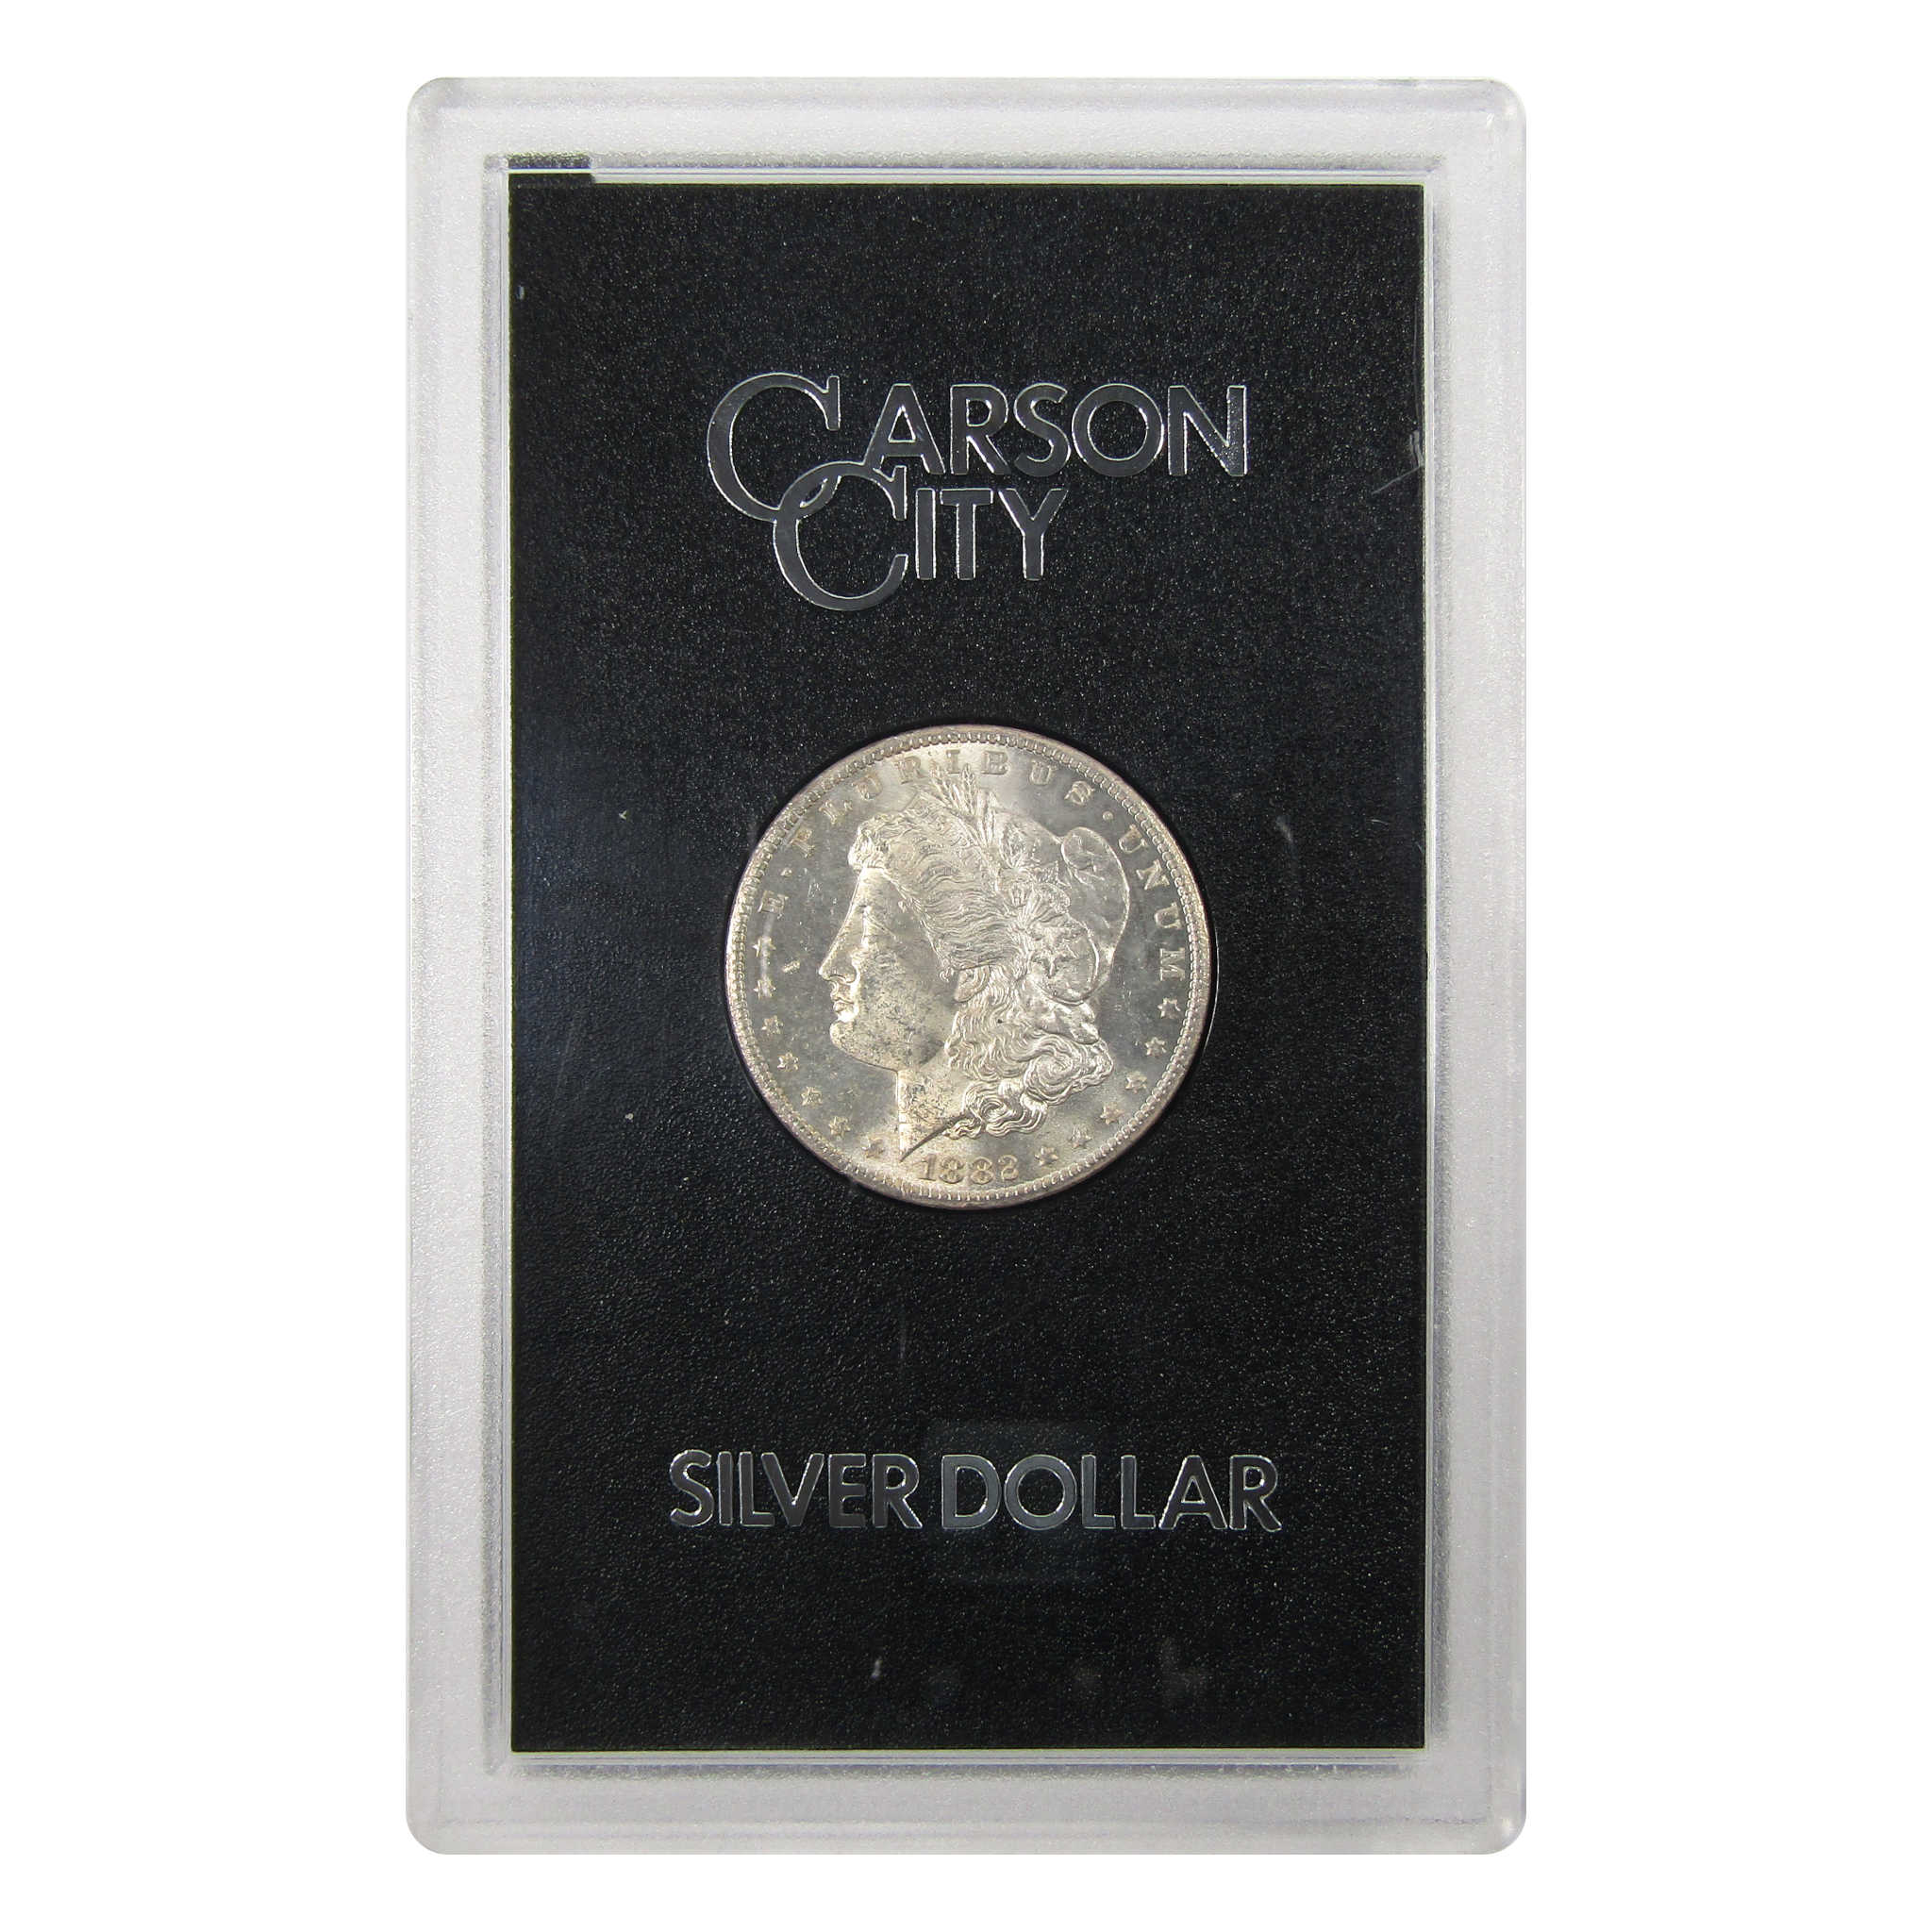 1882 CC GSA Morgan Dollar BU Uncirculated Silver $1 Coin SKU:I9442 - Morgan coin - Morgan silver dollar - Morgan silver dollar for sale - Profile Coins &amp; Collectibles